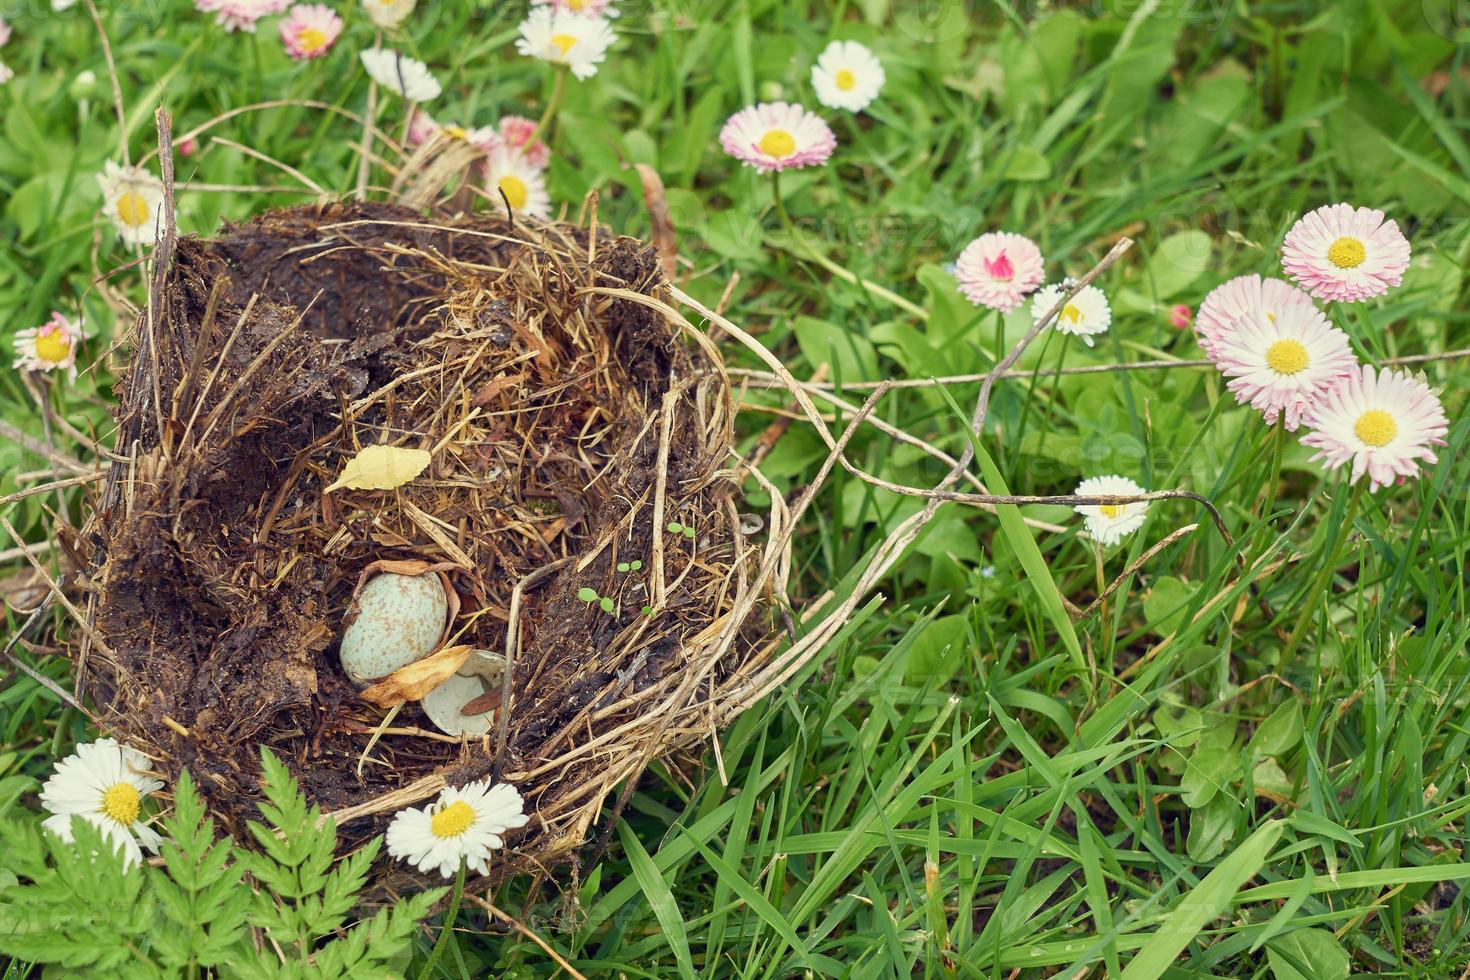 nido de aves del bosque con huevo dentro sobre una hierba. foto